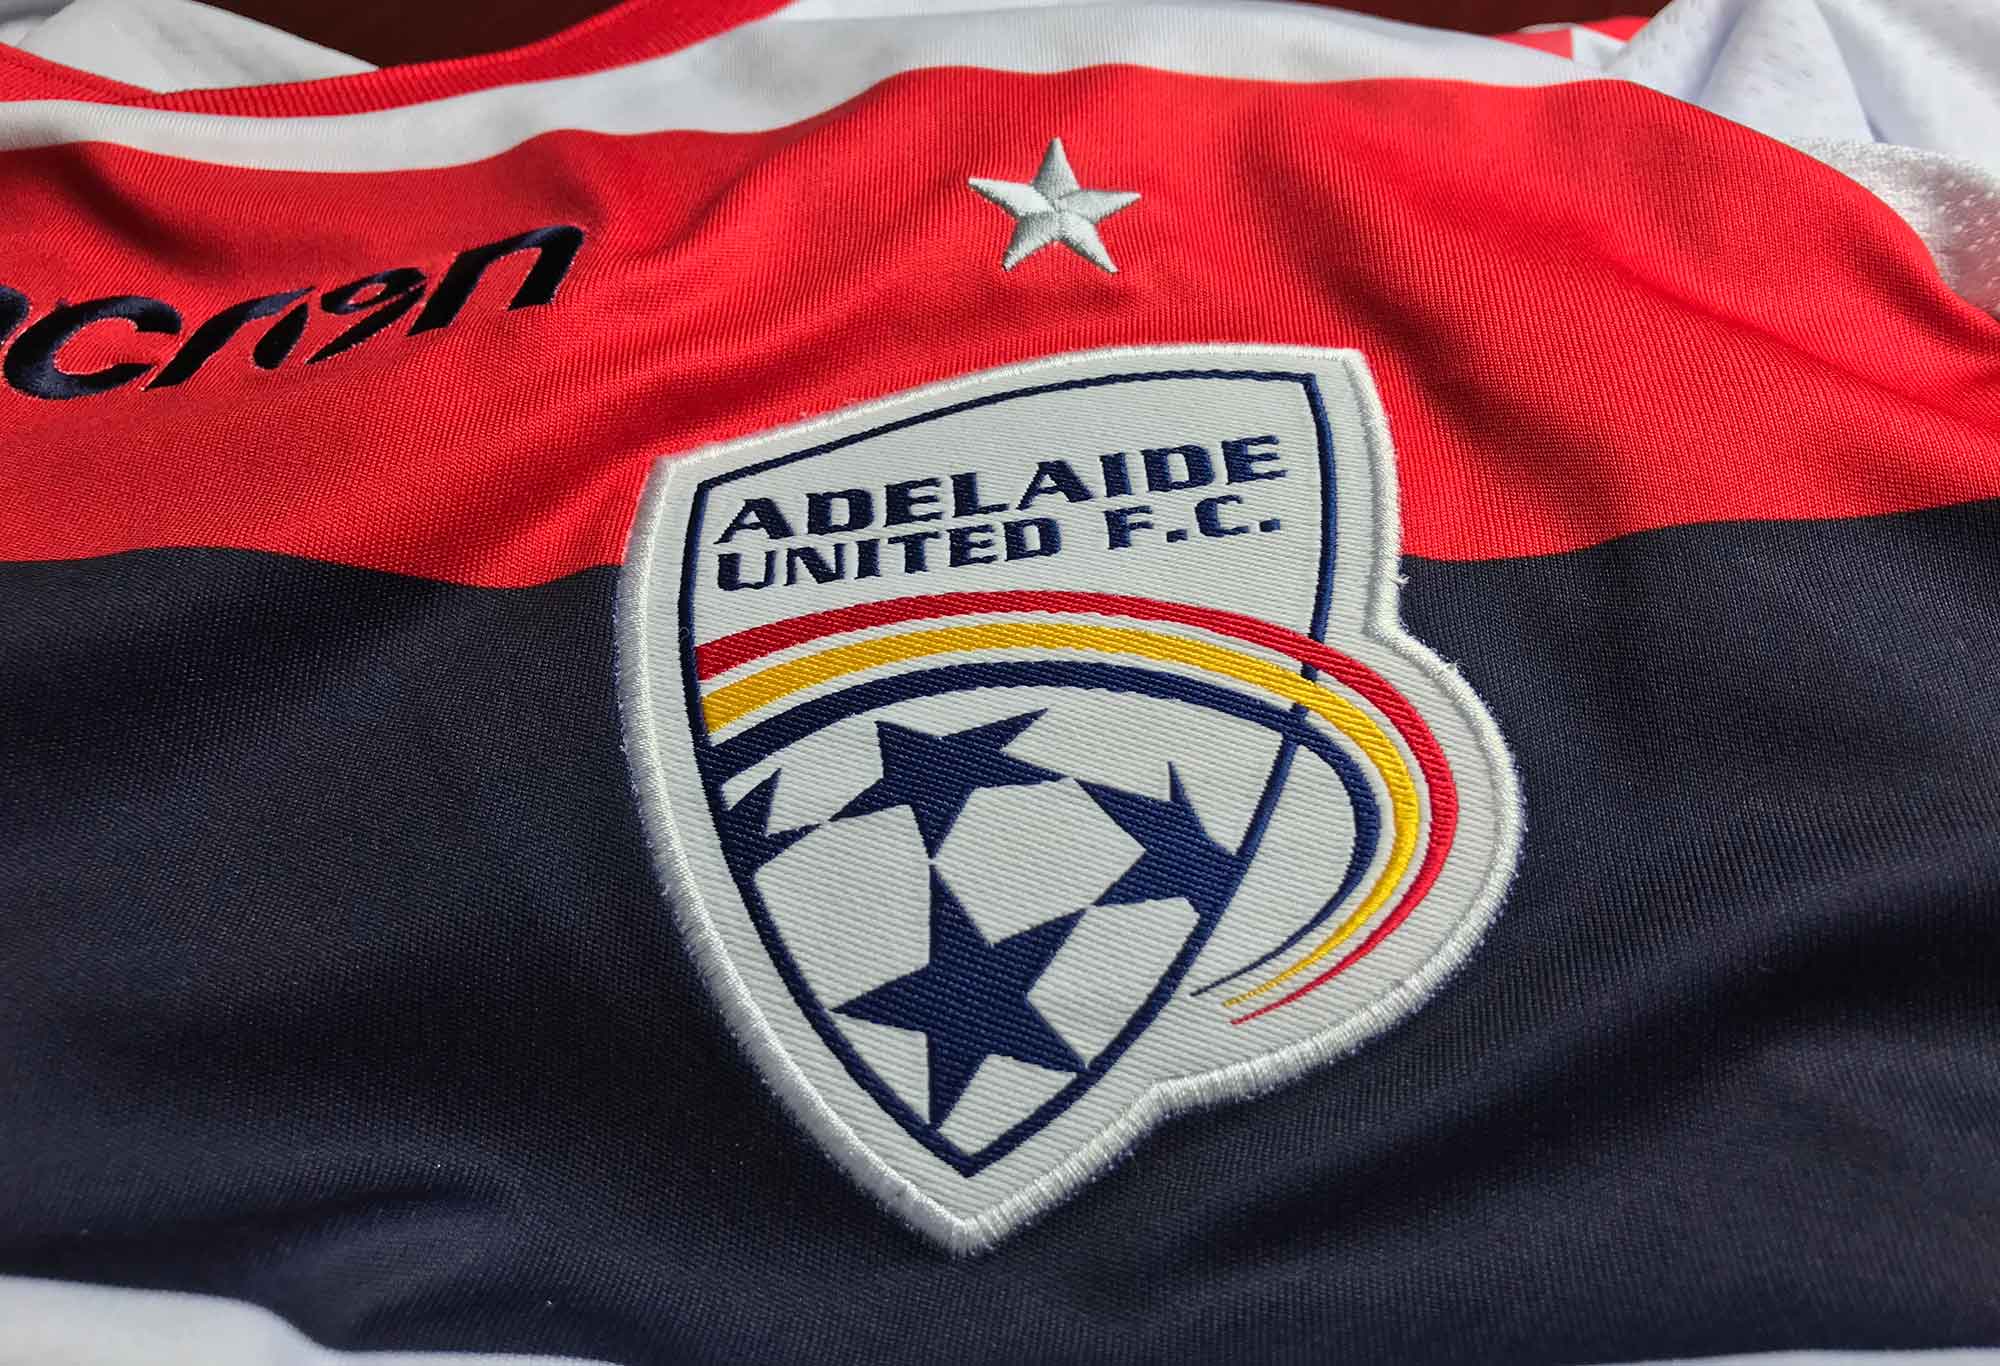 Adelaide United FC shirt and logo